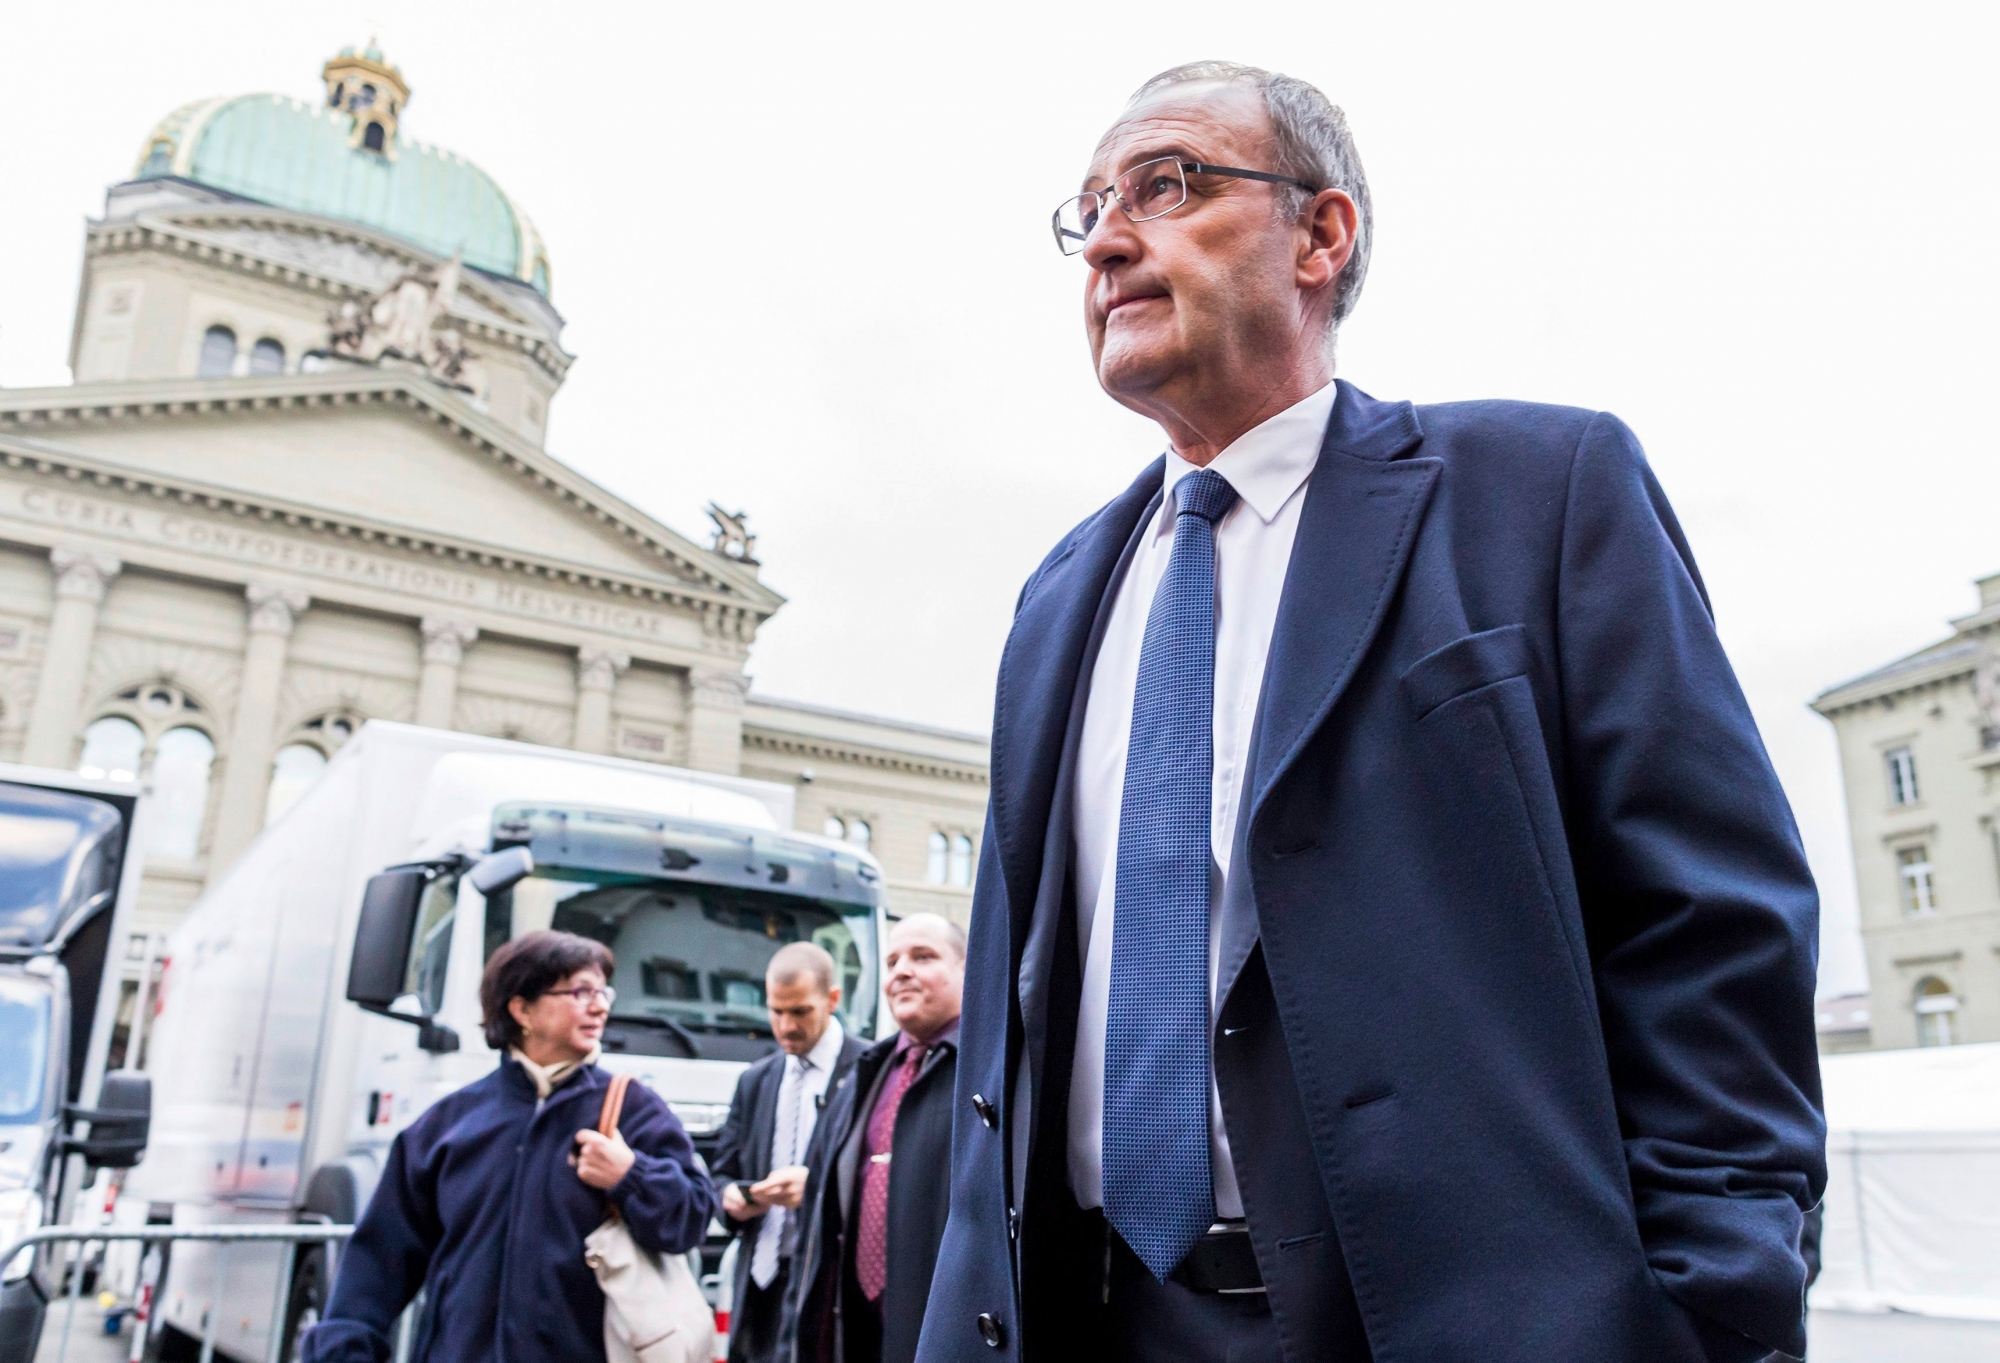 Der neugewaehlte Bundesrat Guy Parmelin (SVP) geht am Bundeshaus vorbei nach den Bundesratswahlen am Mittwoch, 9. Dezember 2015, in Bern. (KEYSTONE/Thomas Hodel) SCHWEIZ BUNDESRATSWAHLEN 2015